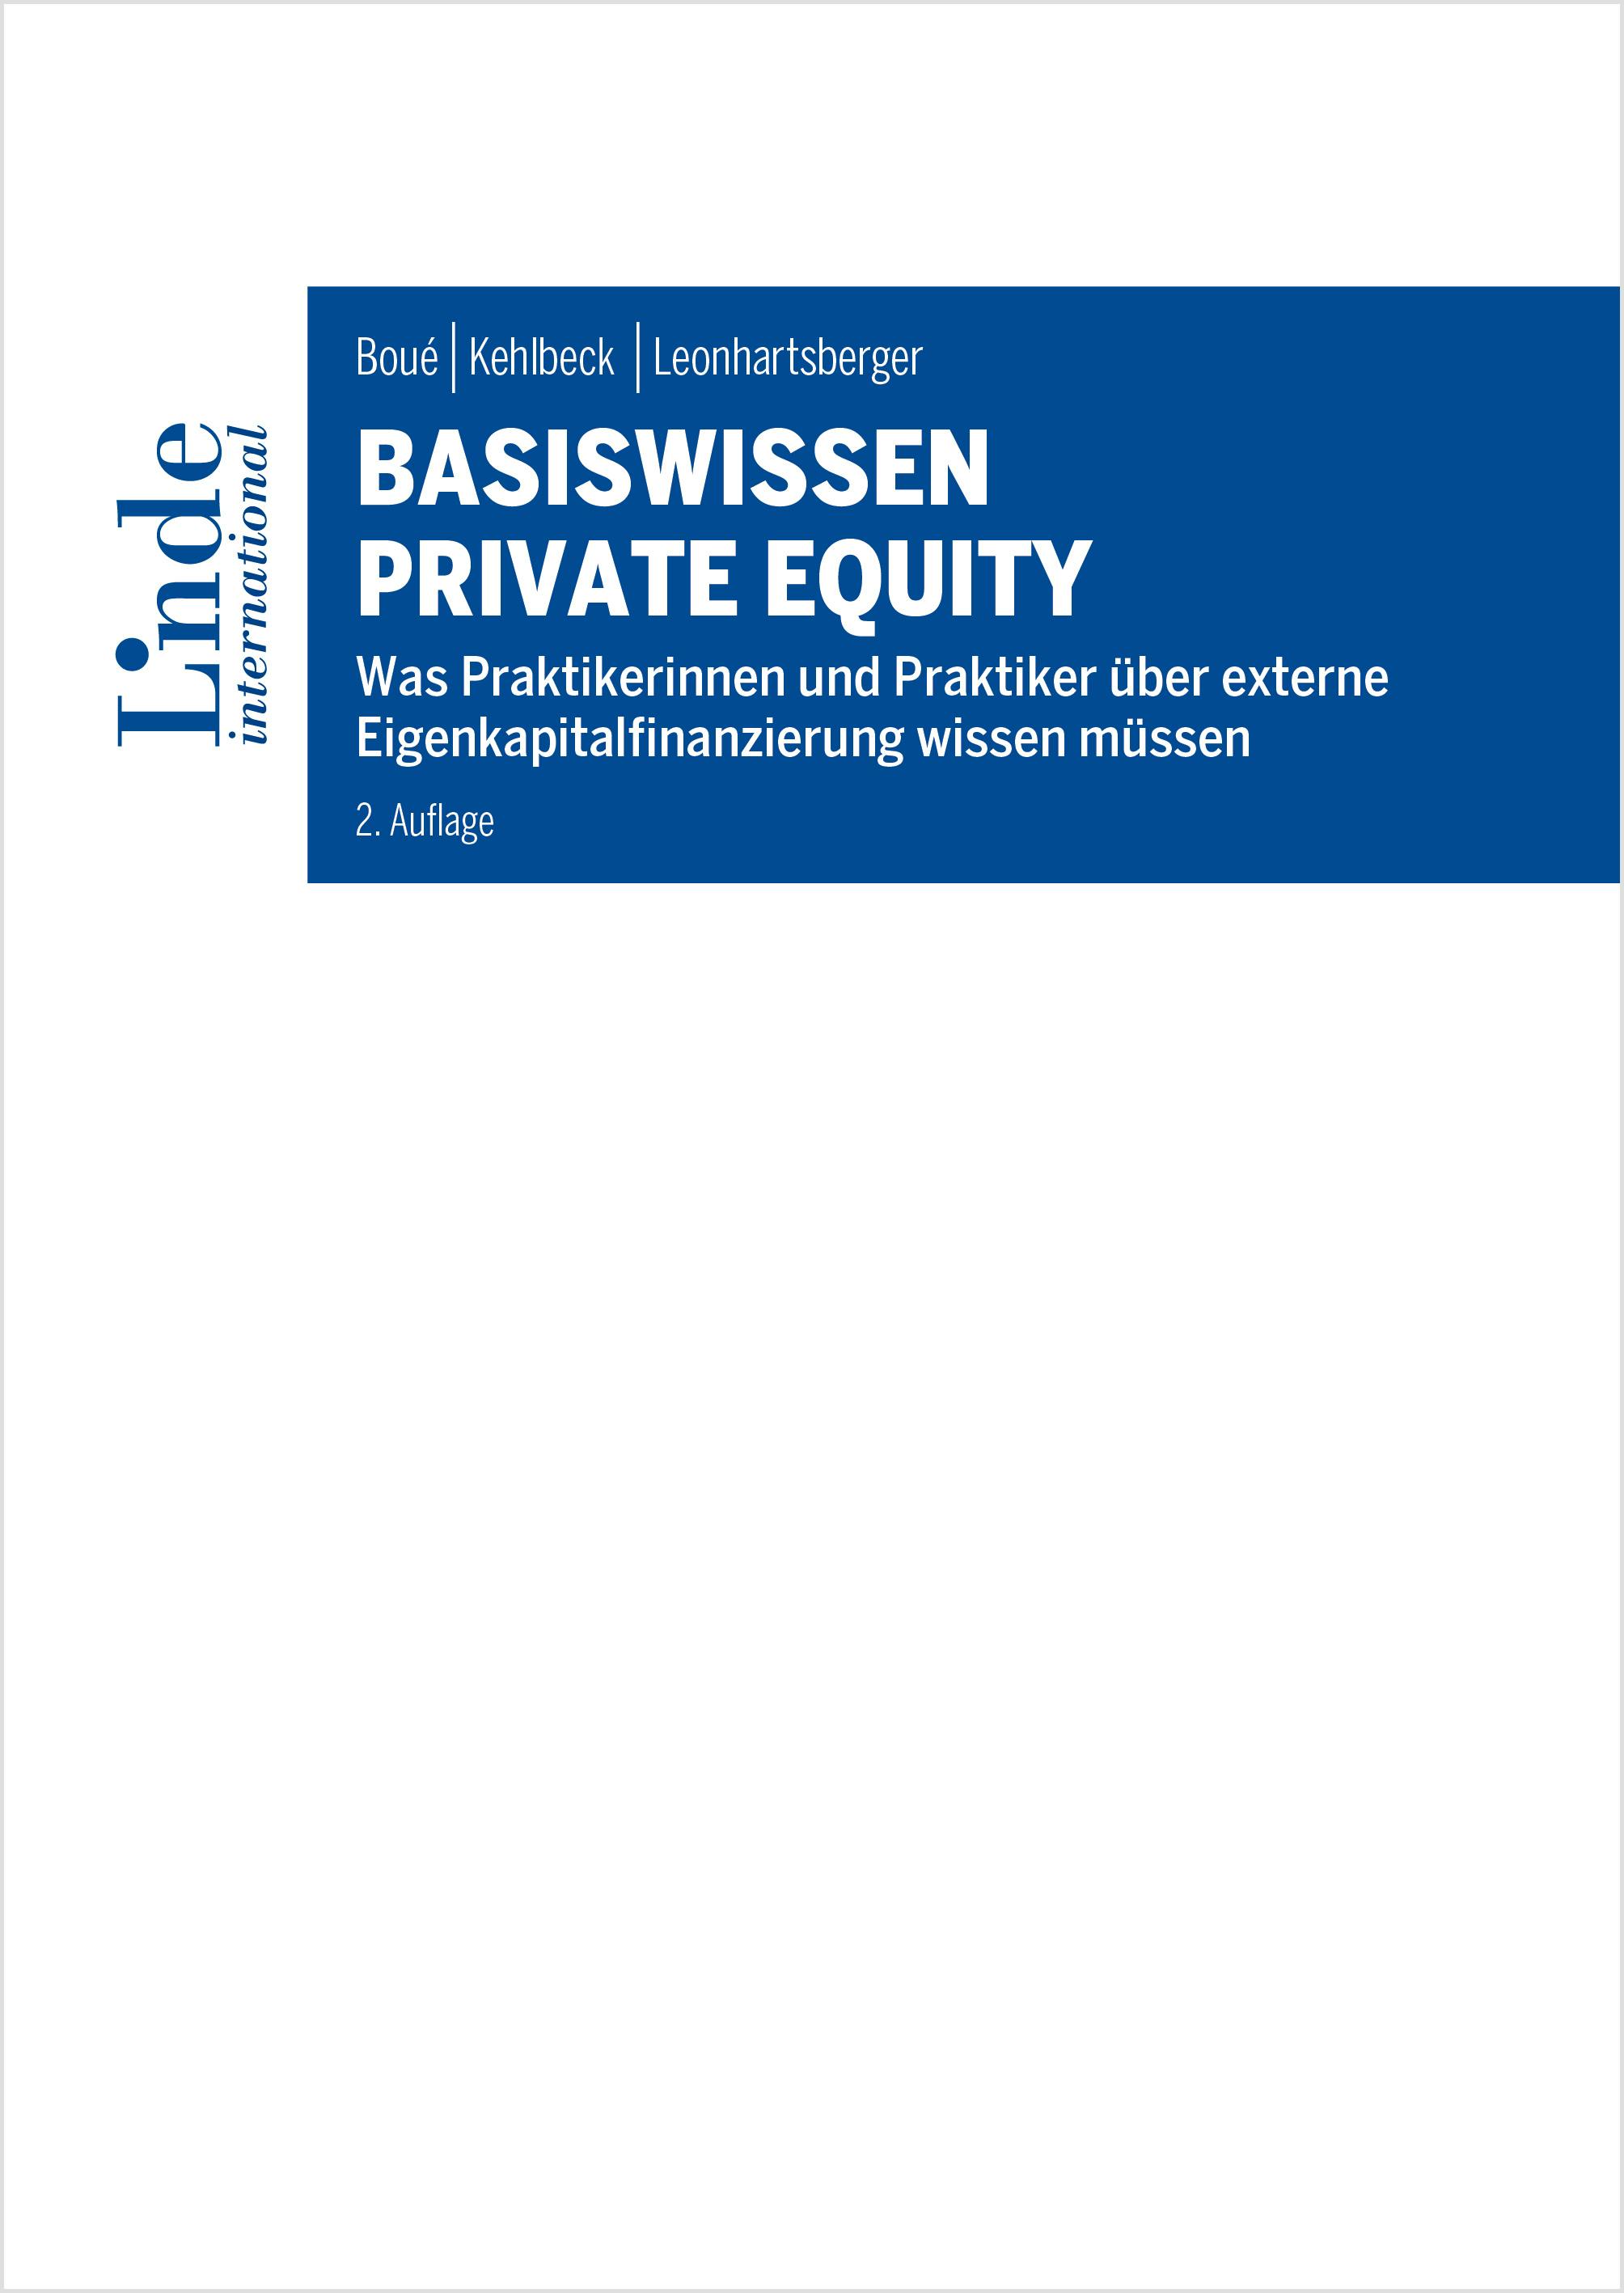 Boué | Kehlbeck | Leonhartsberger
Basiswissen Private Equity
Was Praktikerinnen und Praktiker über externe Eigenkapitalfinanzierung wissen müssen
Linde Lehrbuch